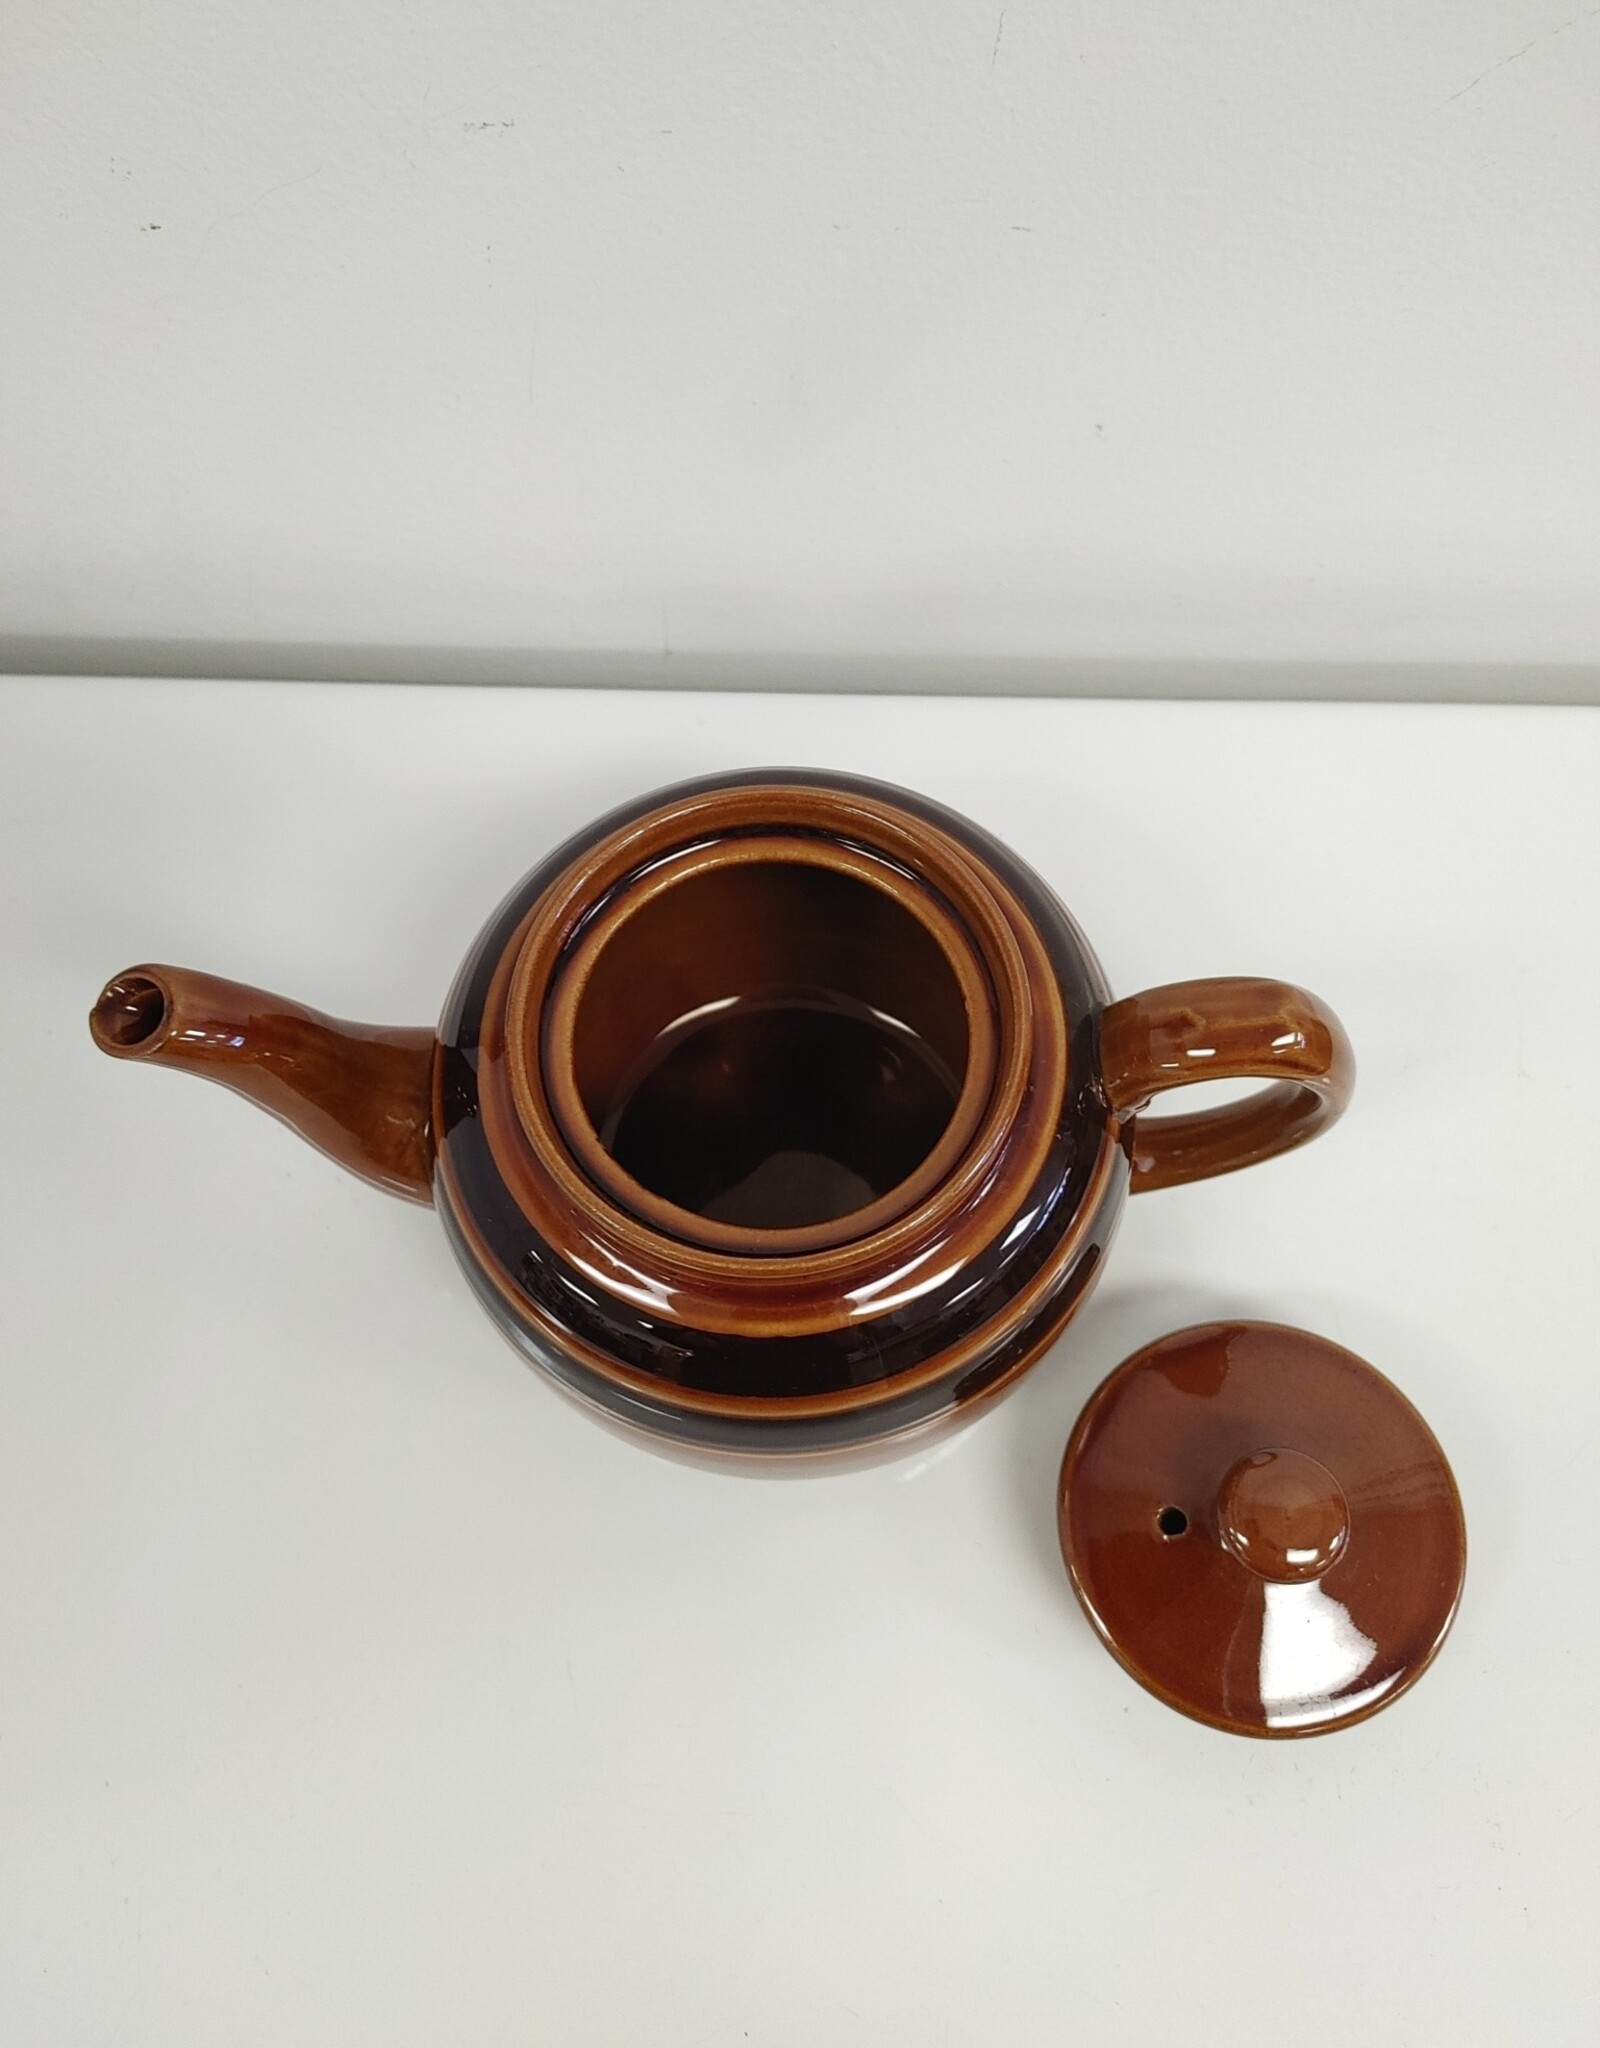 Vintage Sadler Brown Striped Teapot - England